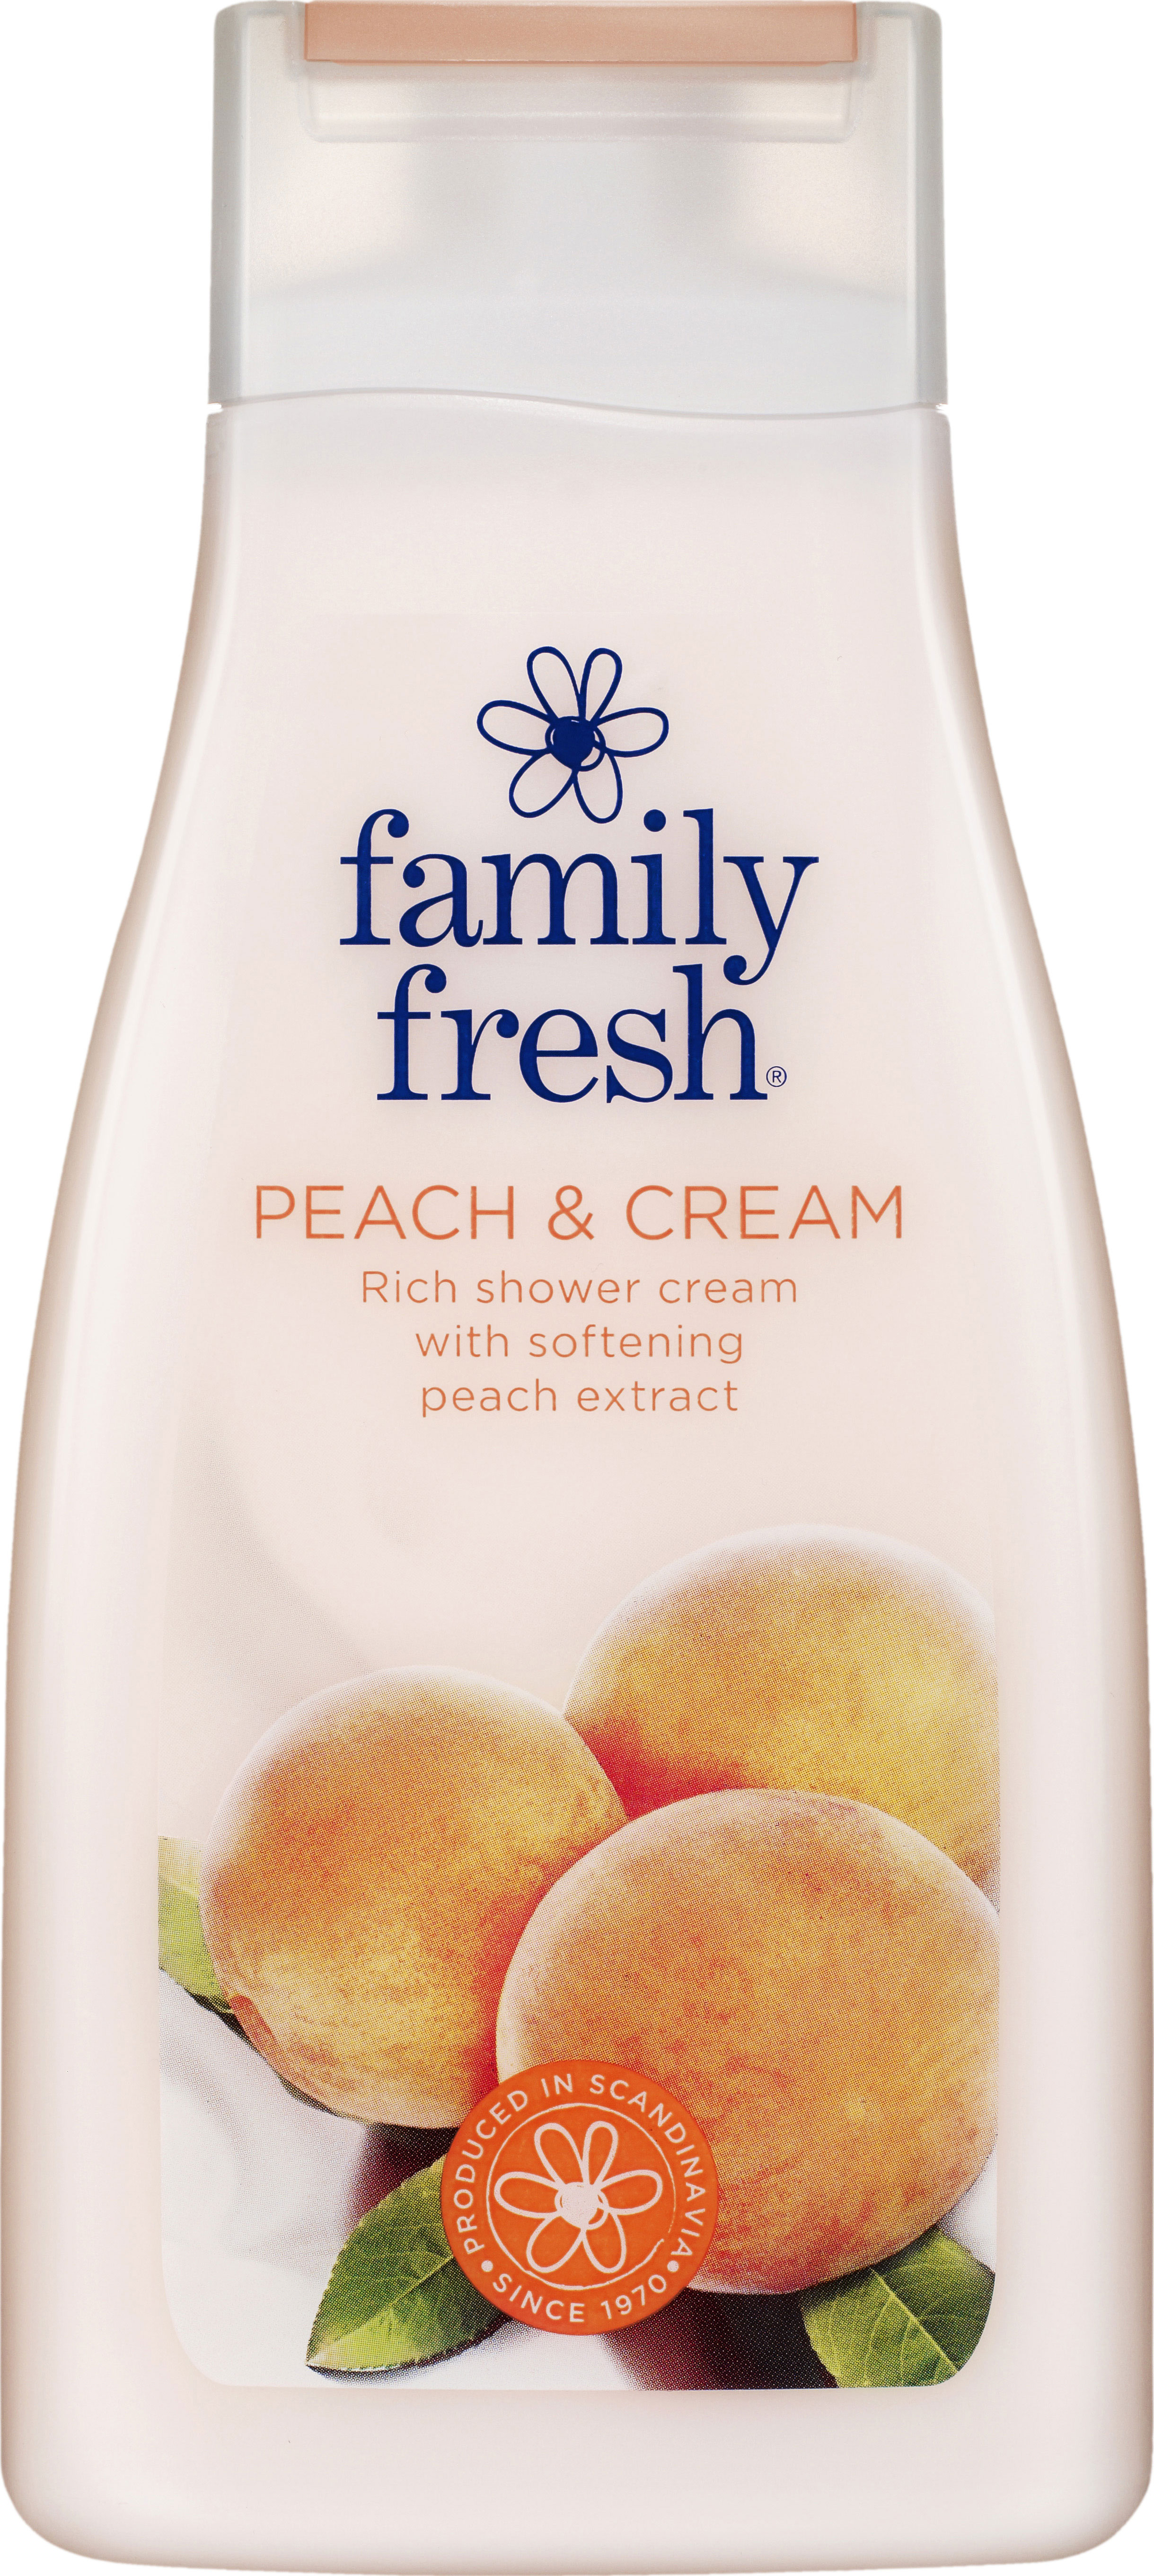 Family Fresh Peach & Cream Rich Shower Cream